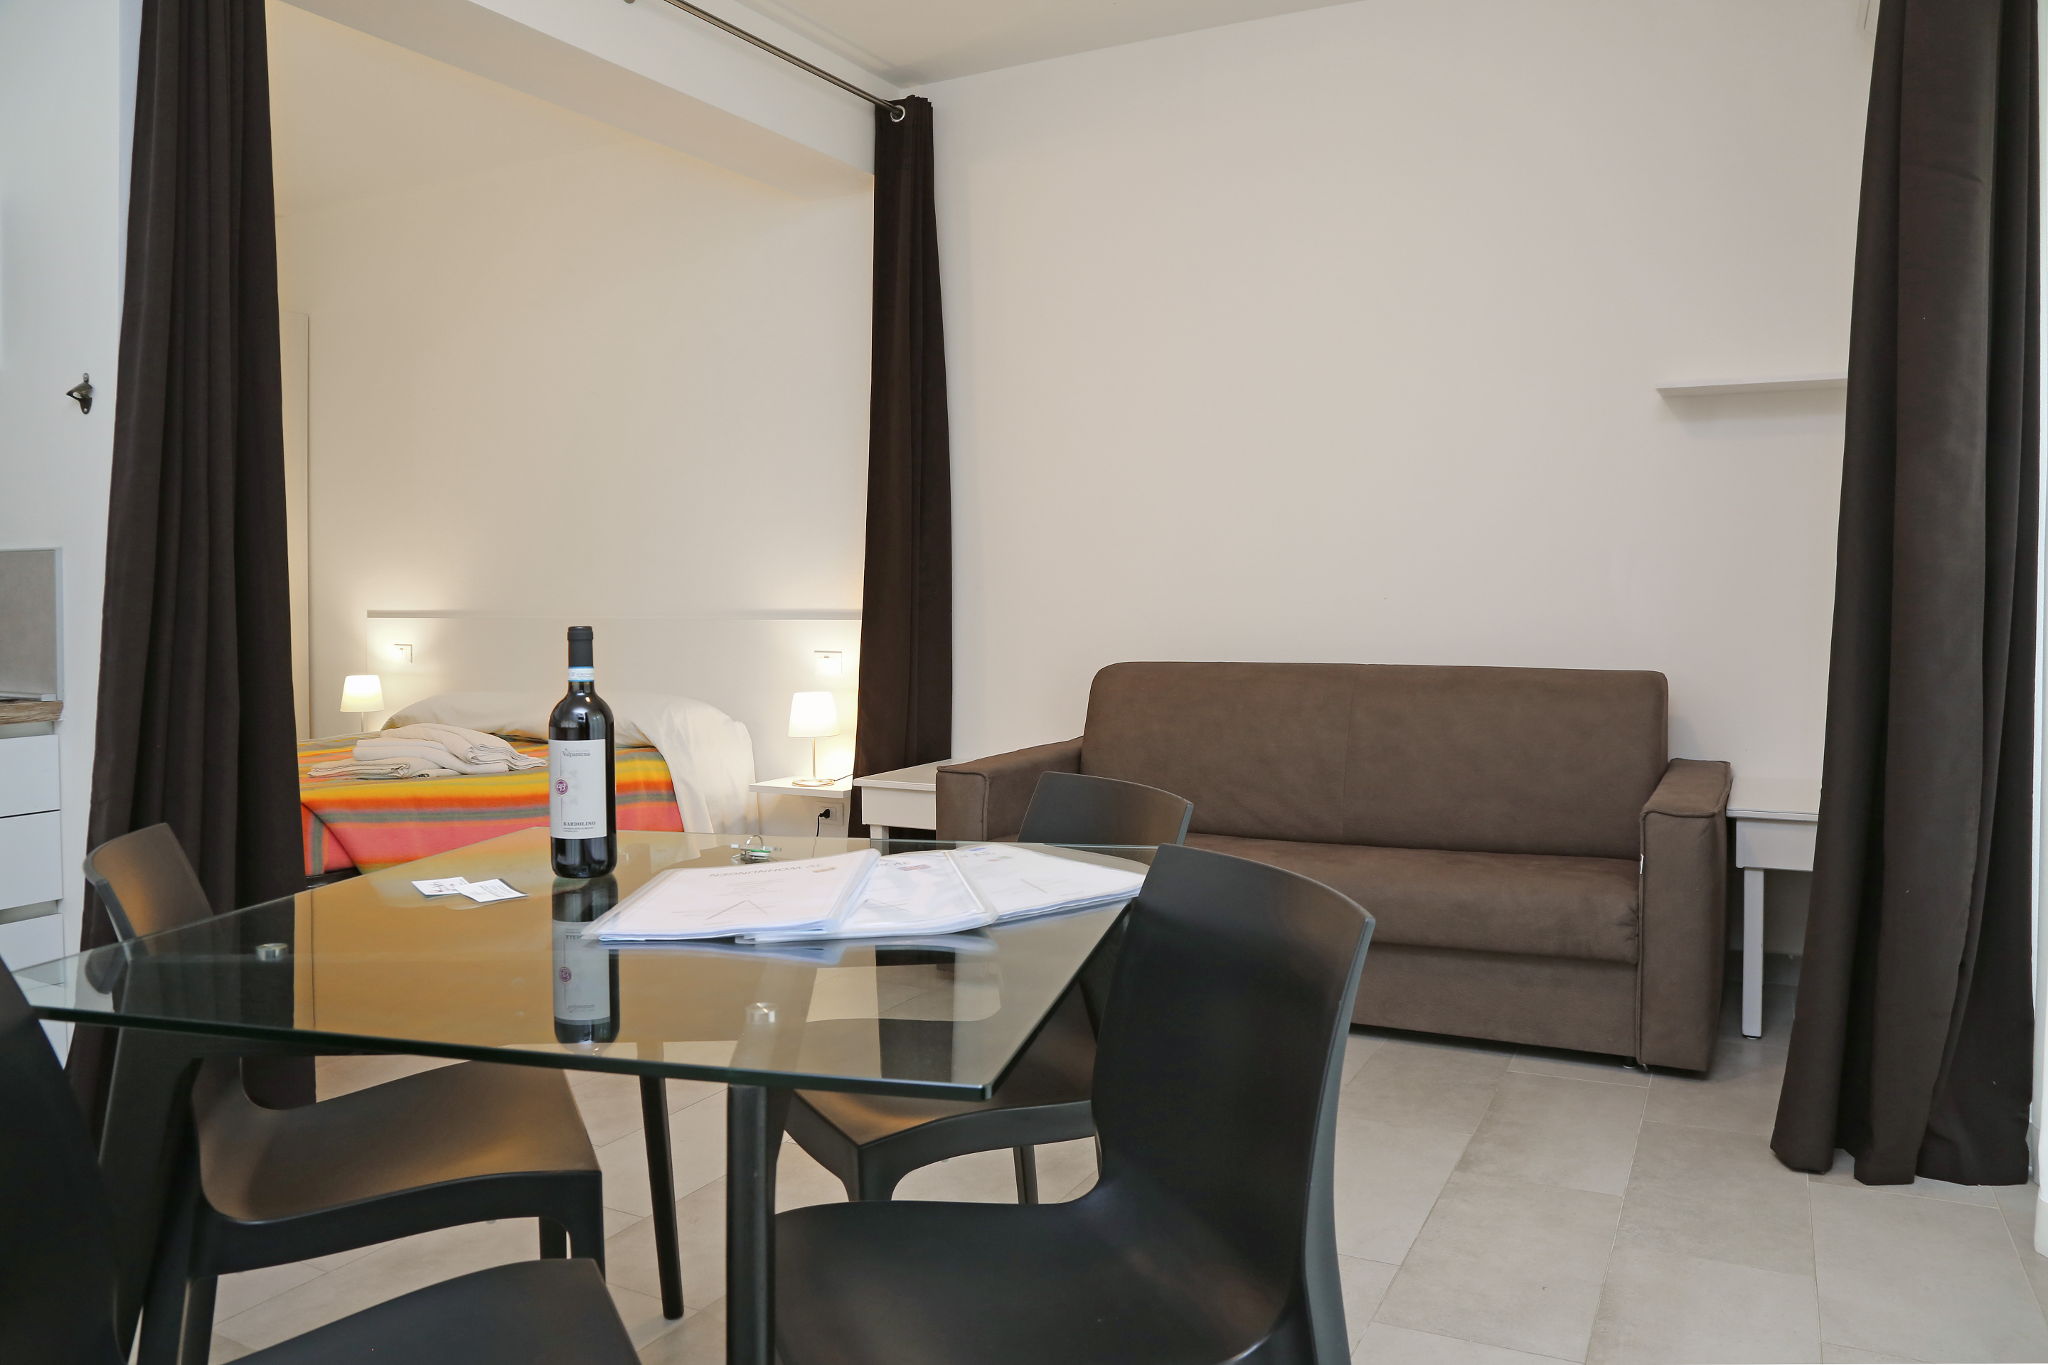 Apartment 3 in Bardolino